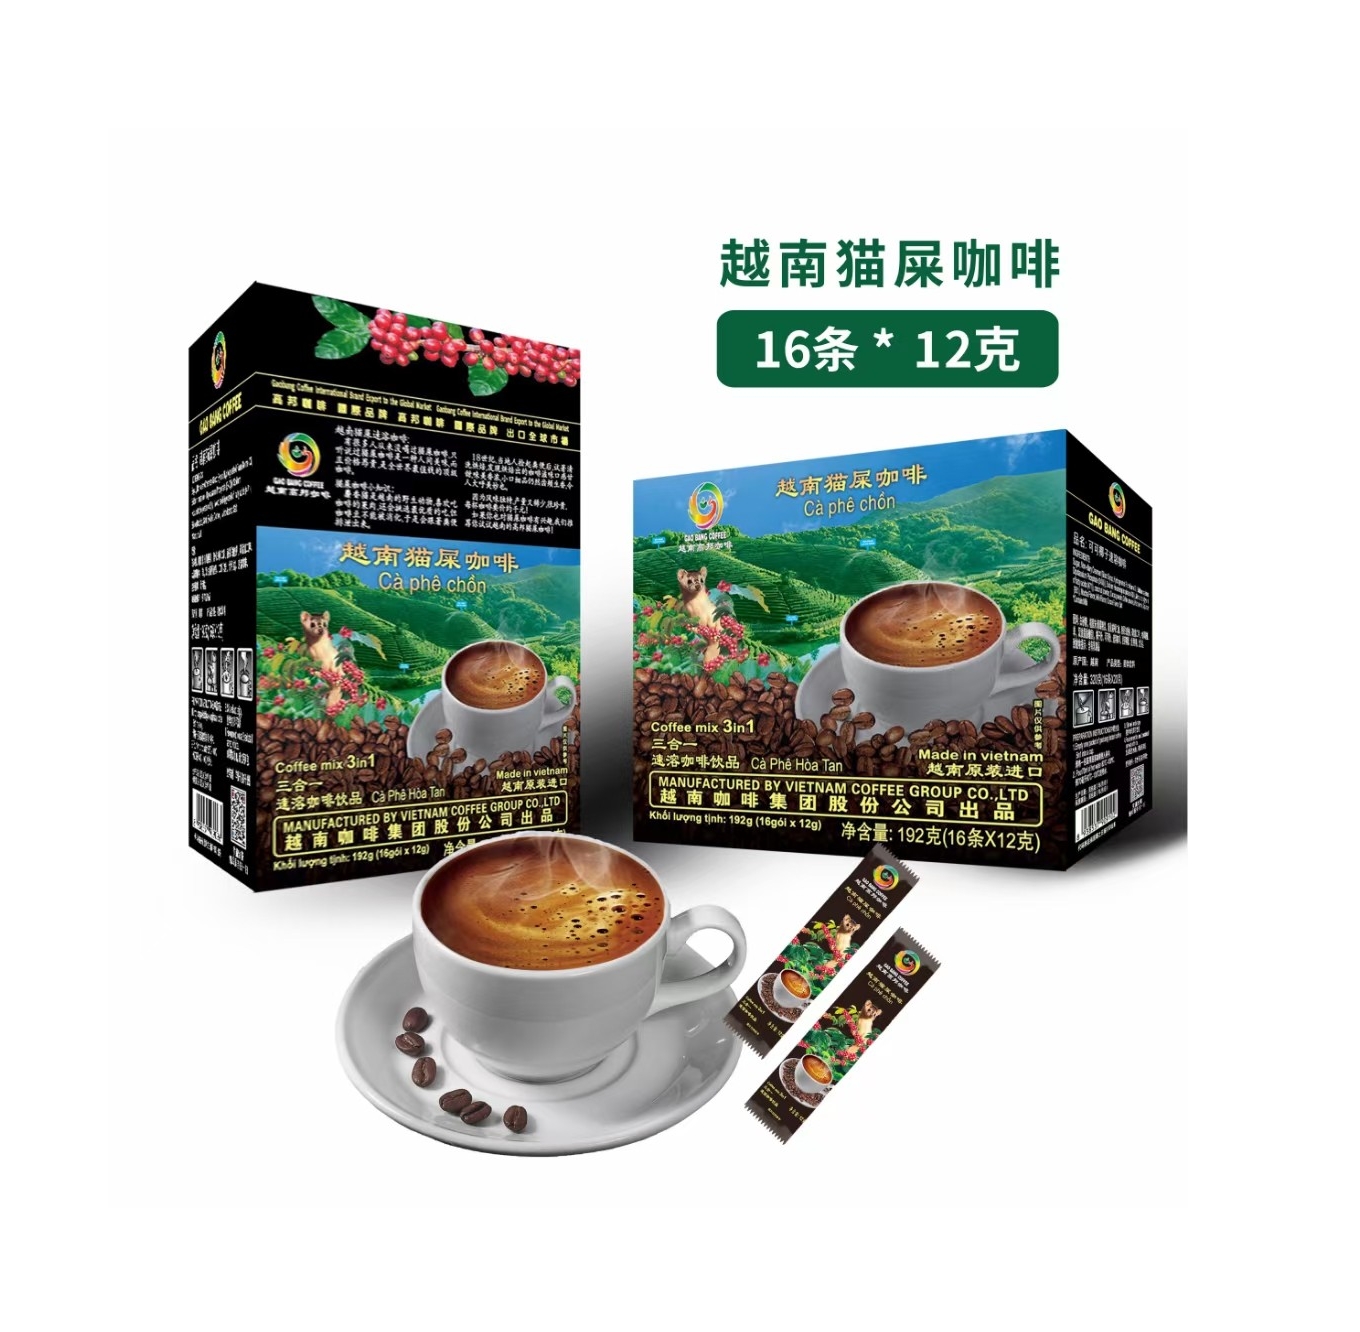 2021 Best selling !! Gaobang 5in1 Coffee Instant Powder 16grams Vietnam